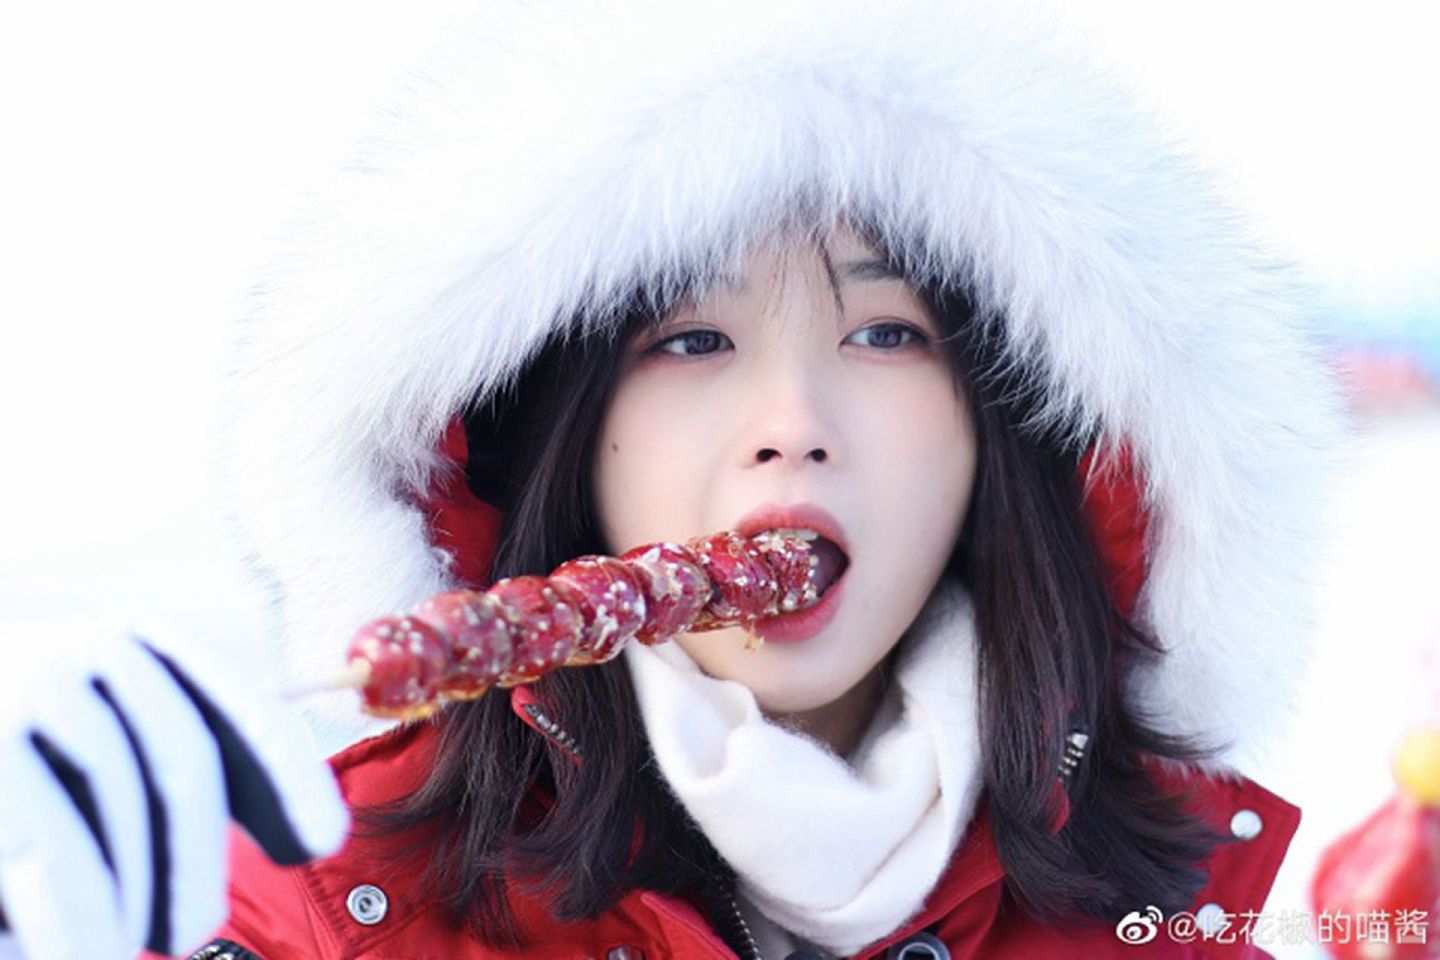 王冰冰被网友们称为“初恋脸”。（微博@吃花椒的喵酱）